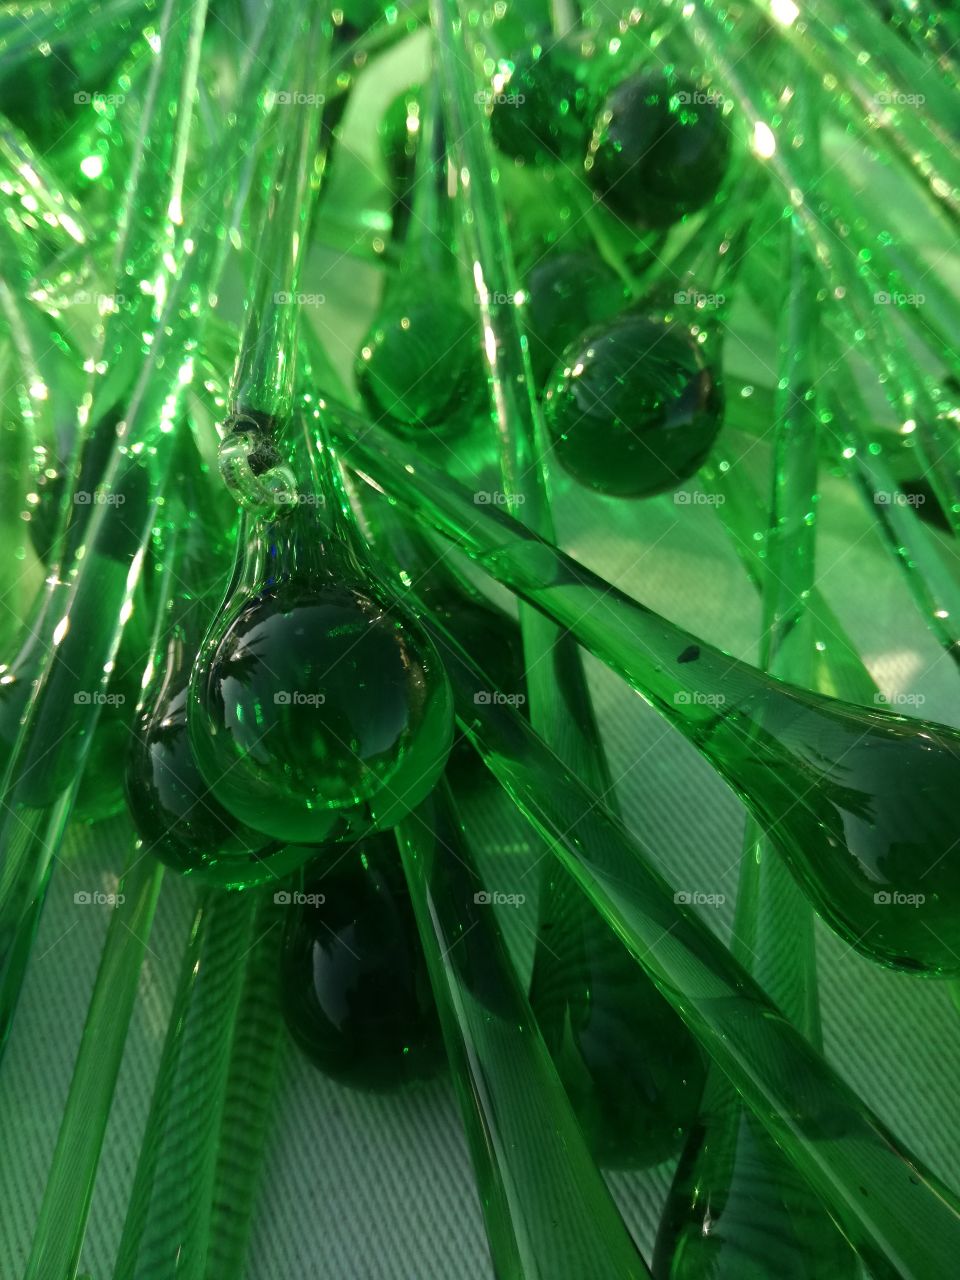 Frozen Glass Green